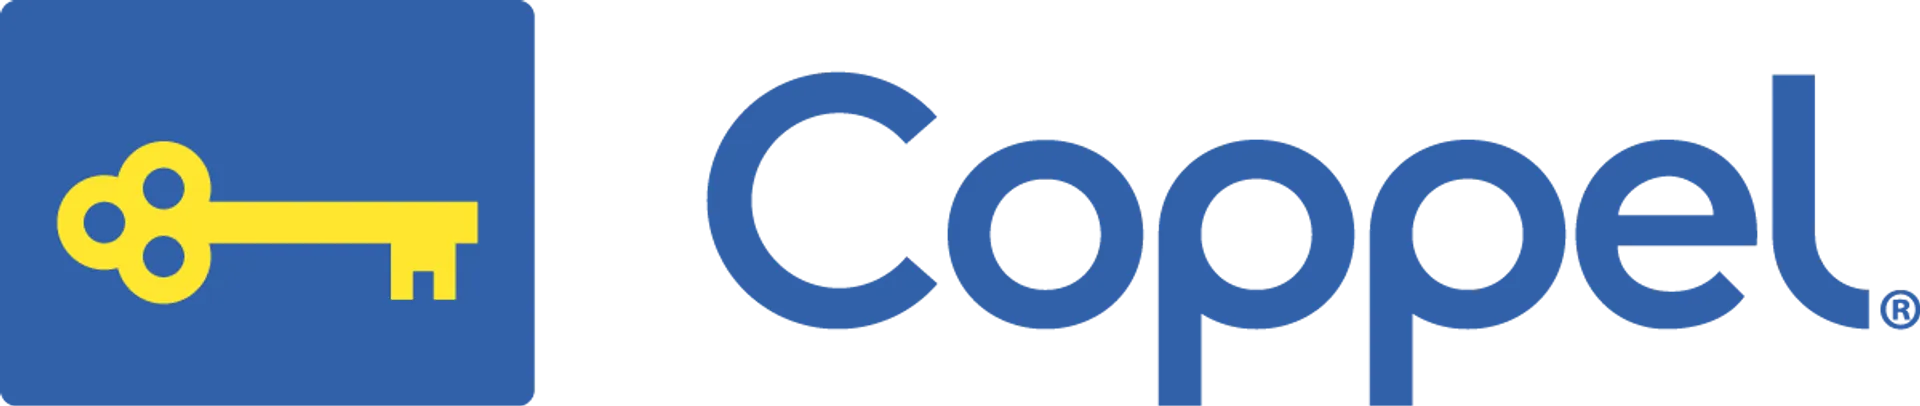 COPPEL logo